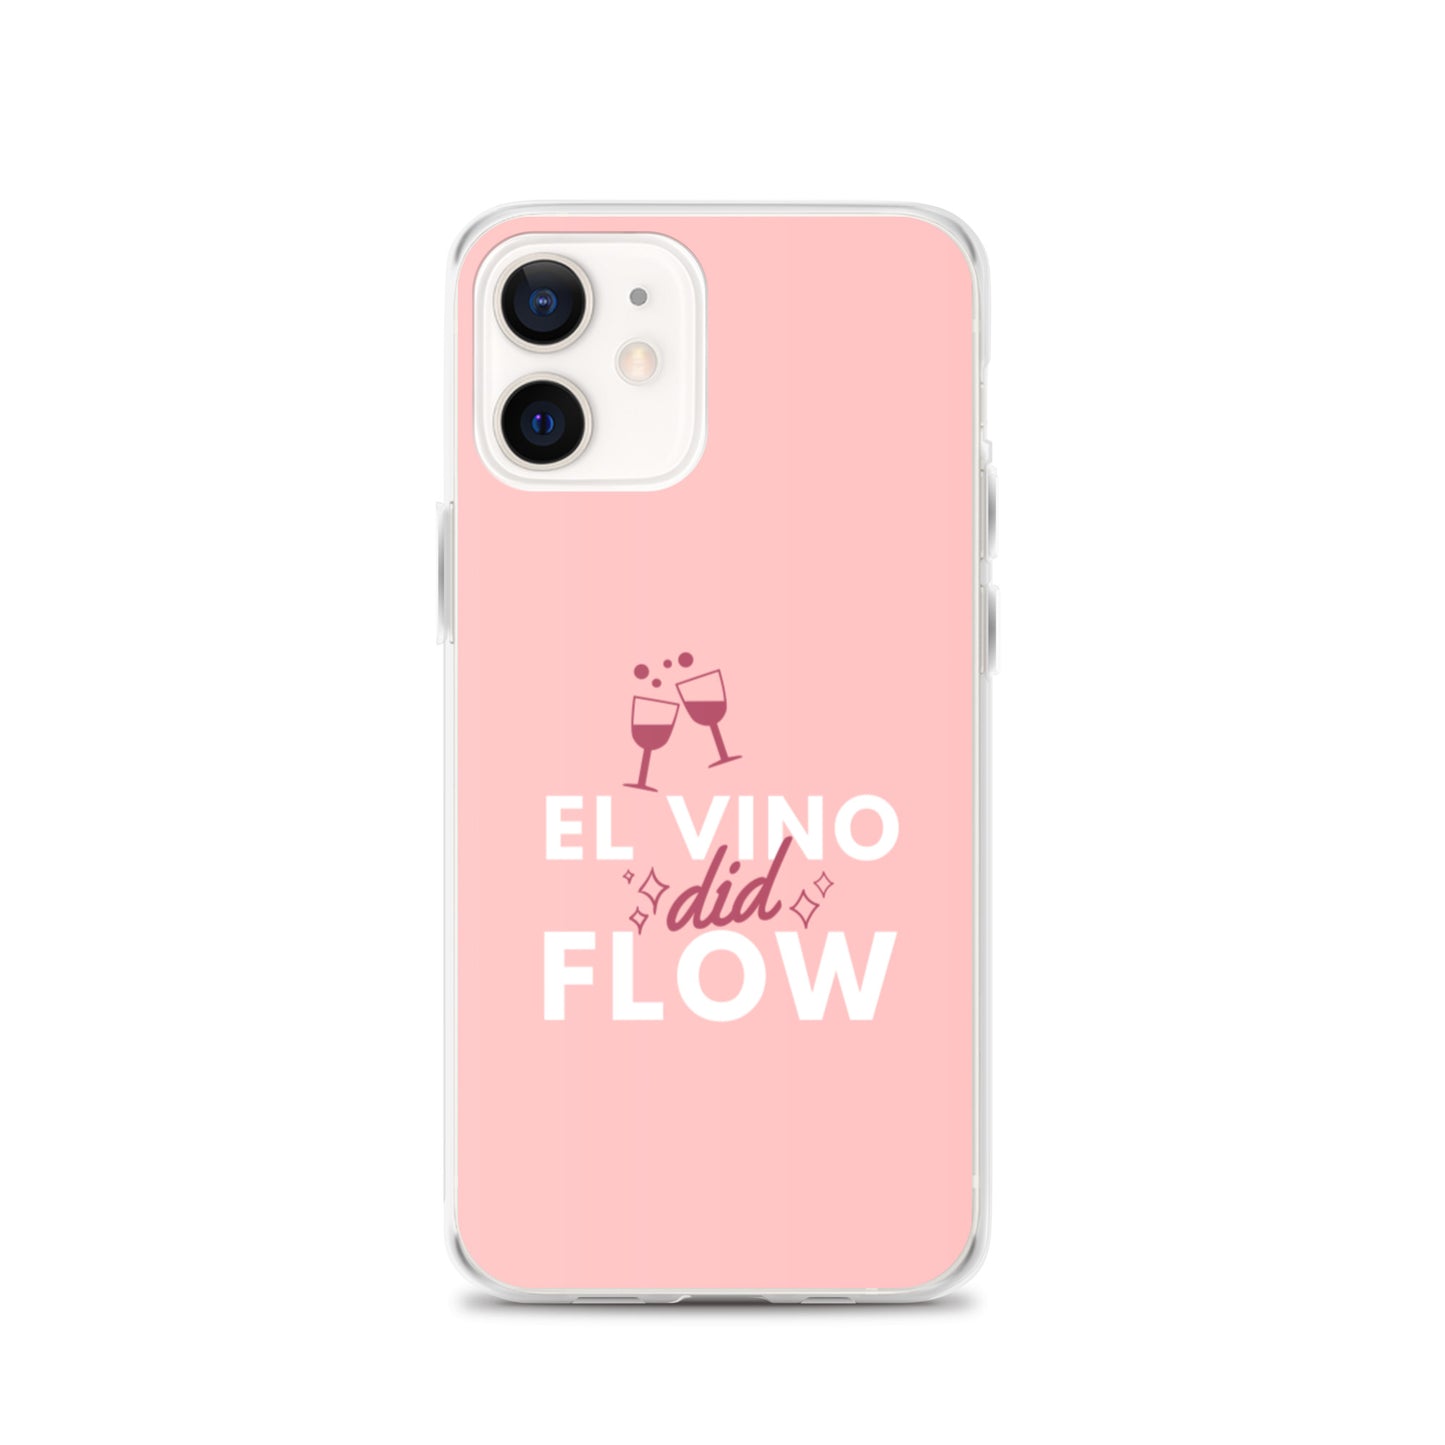 El Vino Did Flow Comedy Quote iPhone Case